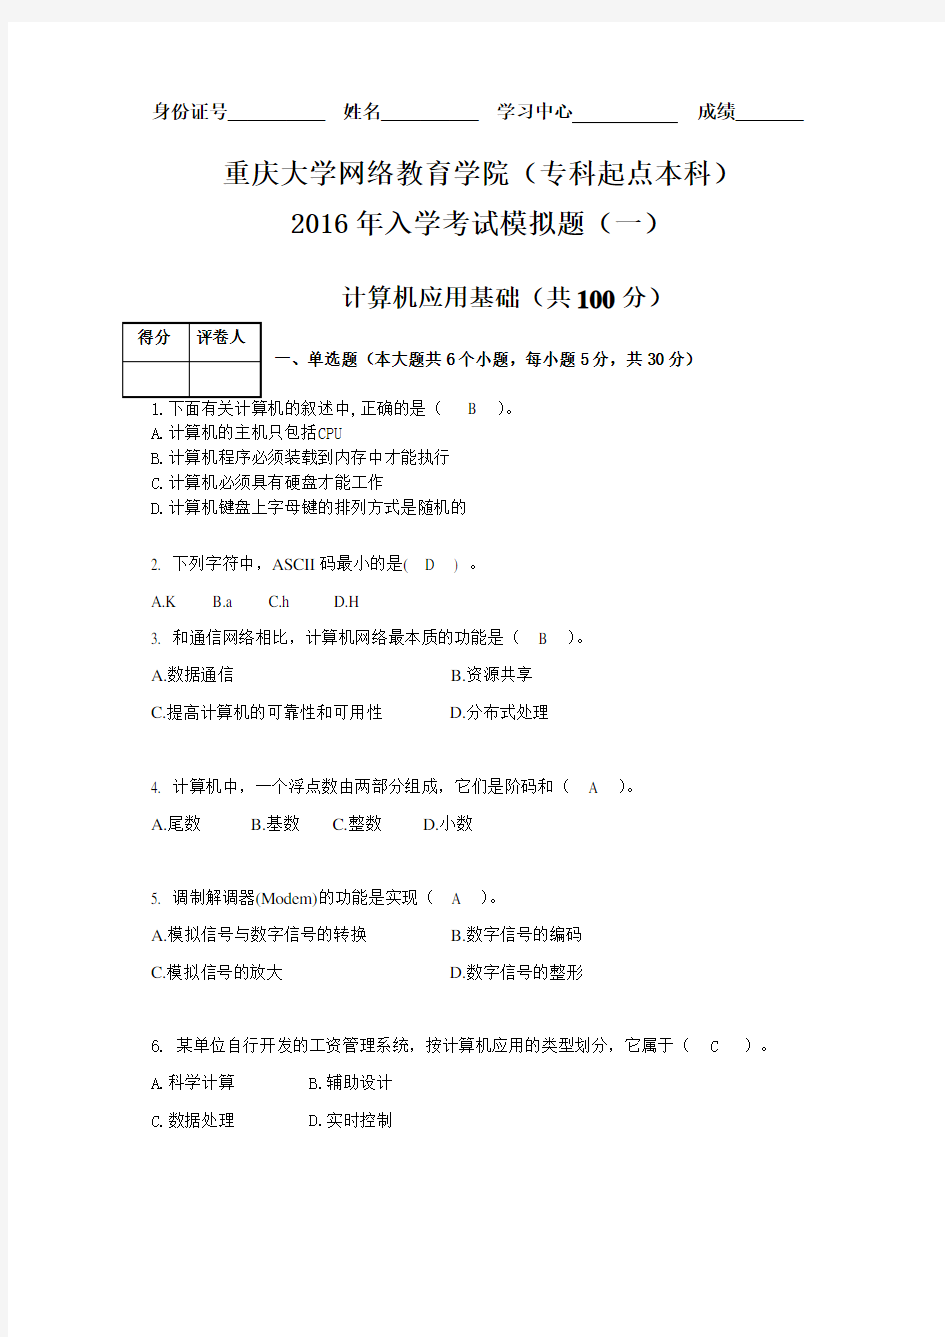 重庆大学入学考试资料计算机应用基础一(本科入学考试模拟题)